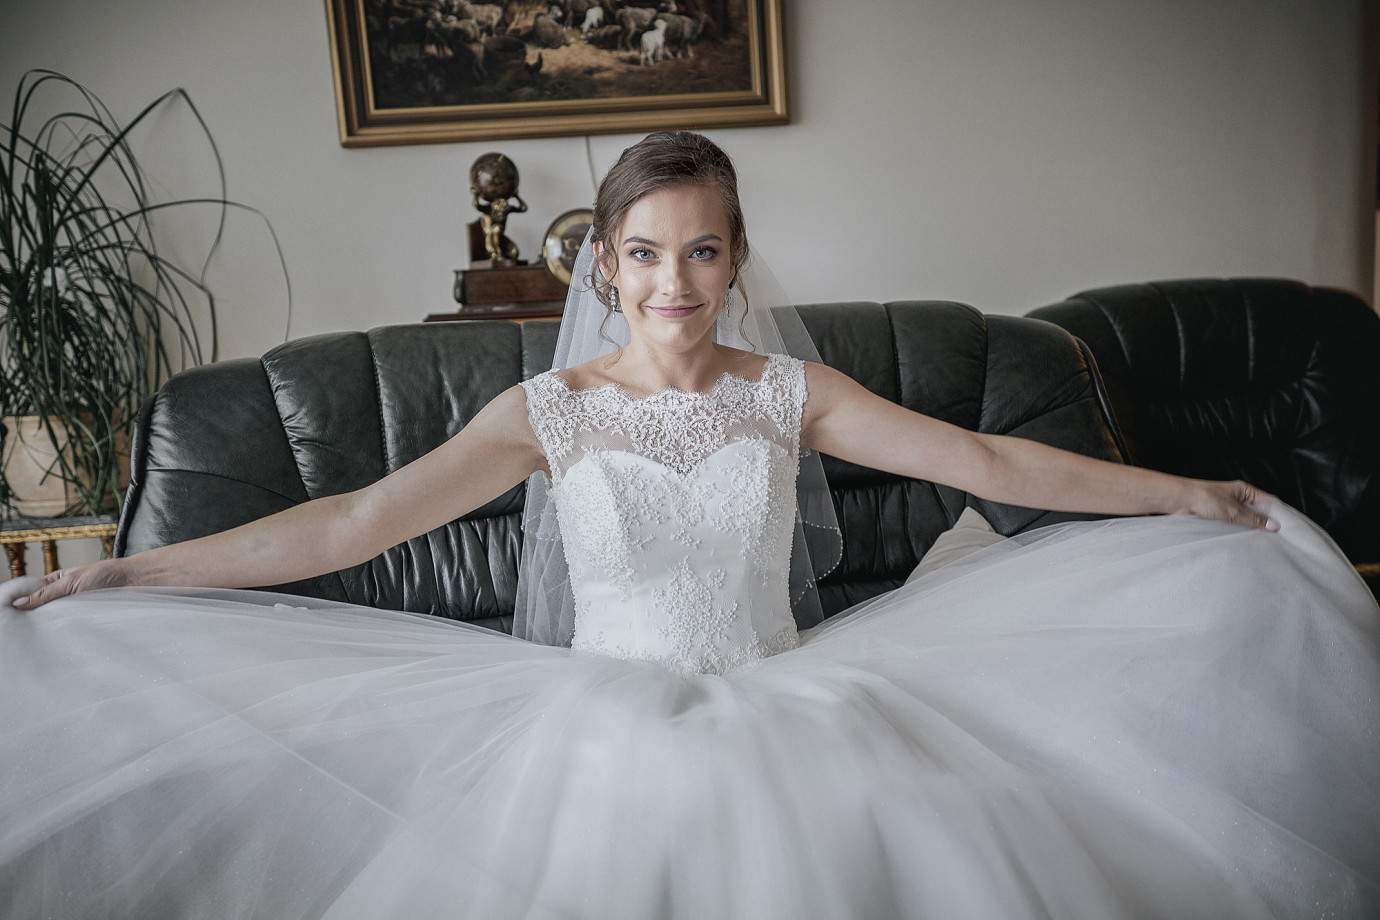 zdjęcia grodzisk-mazowiecki fotograf adam-lis portfolio zdjecia slubne inspiracje wesele plener slubny